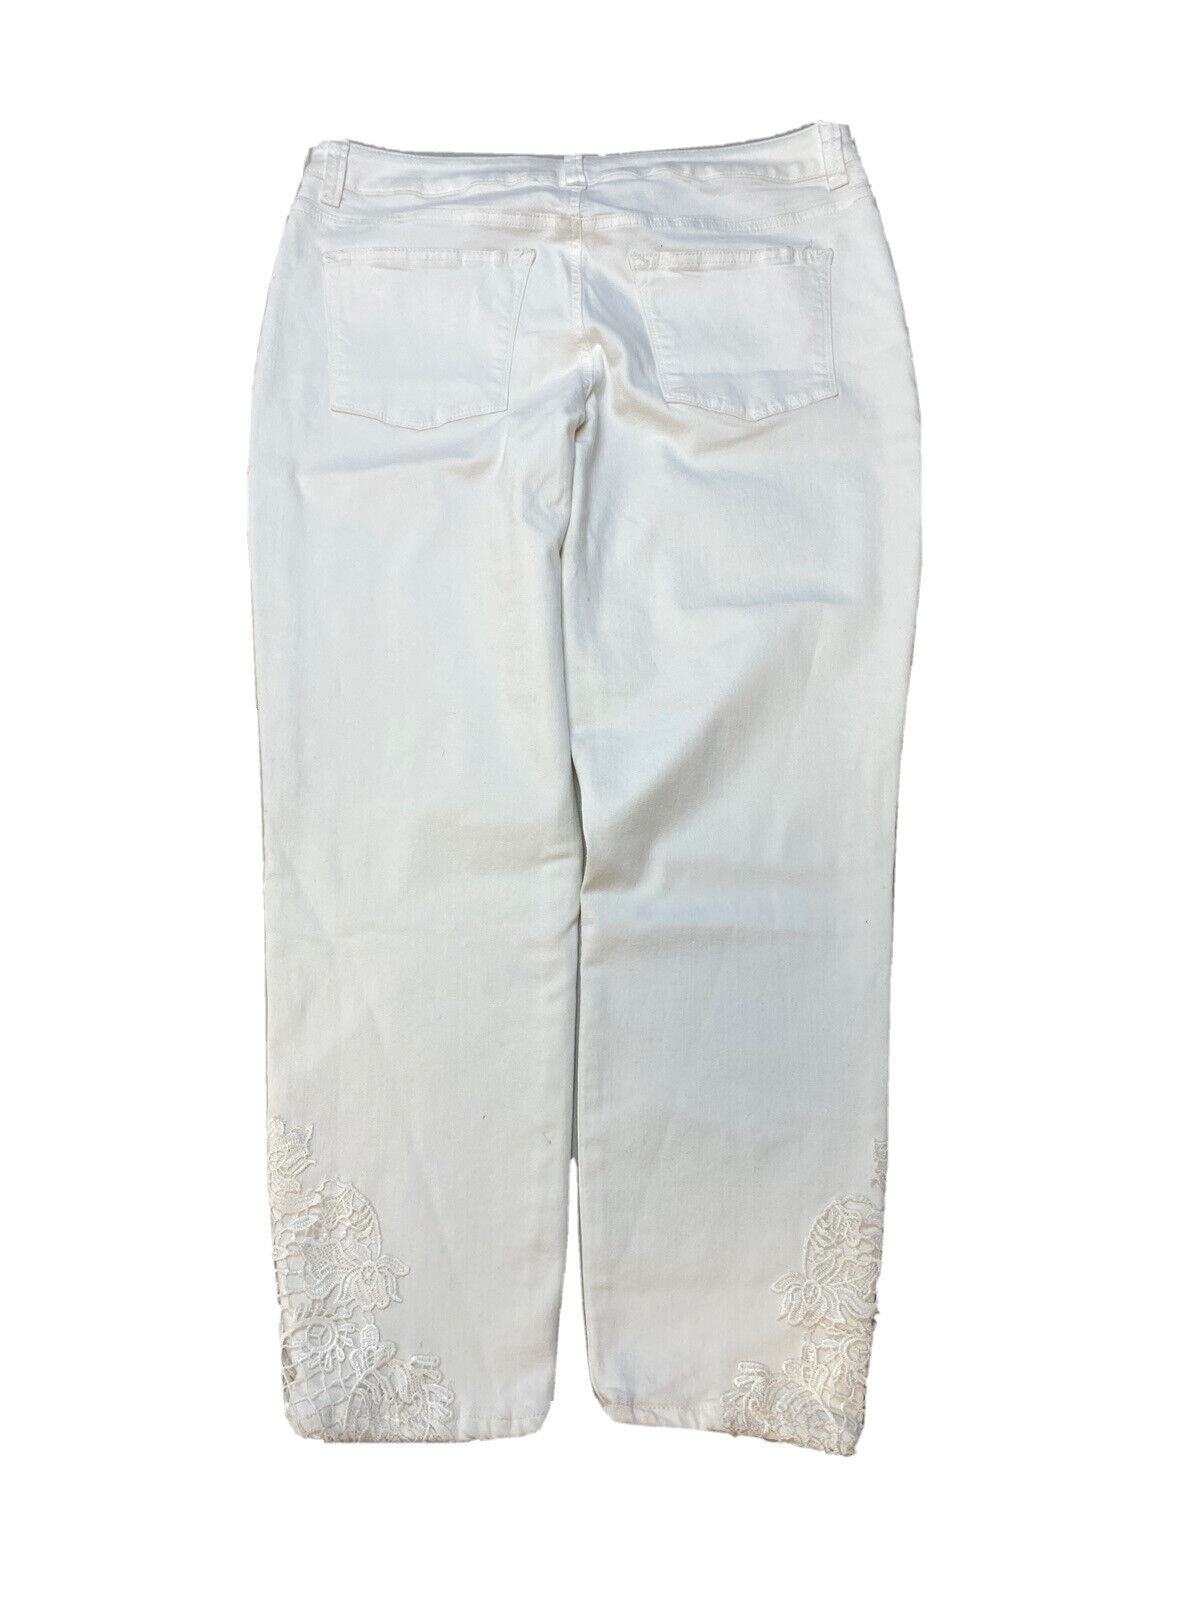 NUEVO Maurices Mujer Blanco Denim Stretch Skinny Jeans Sz 13/14